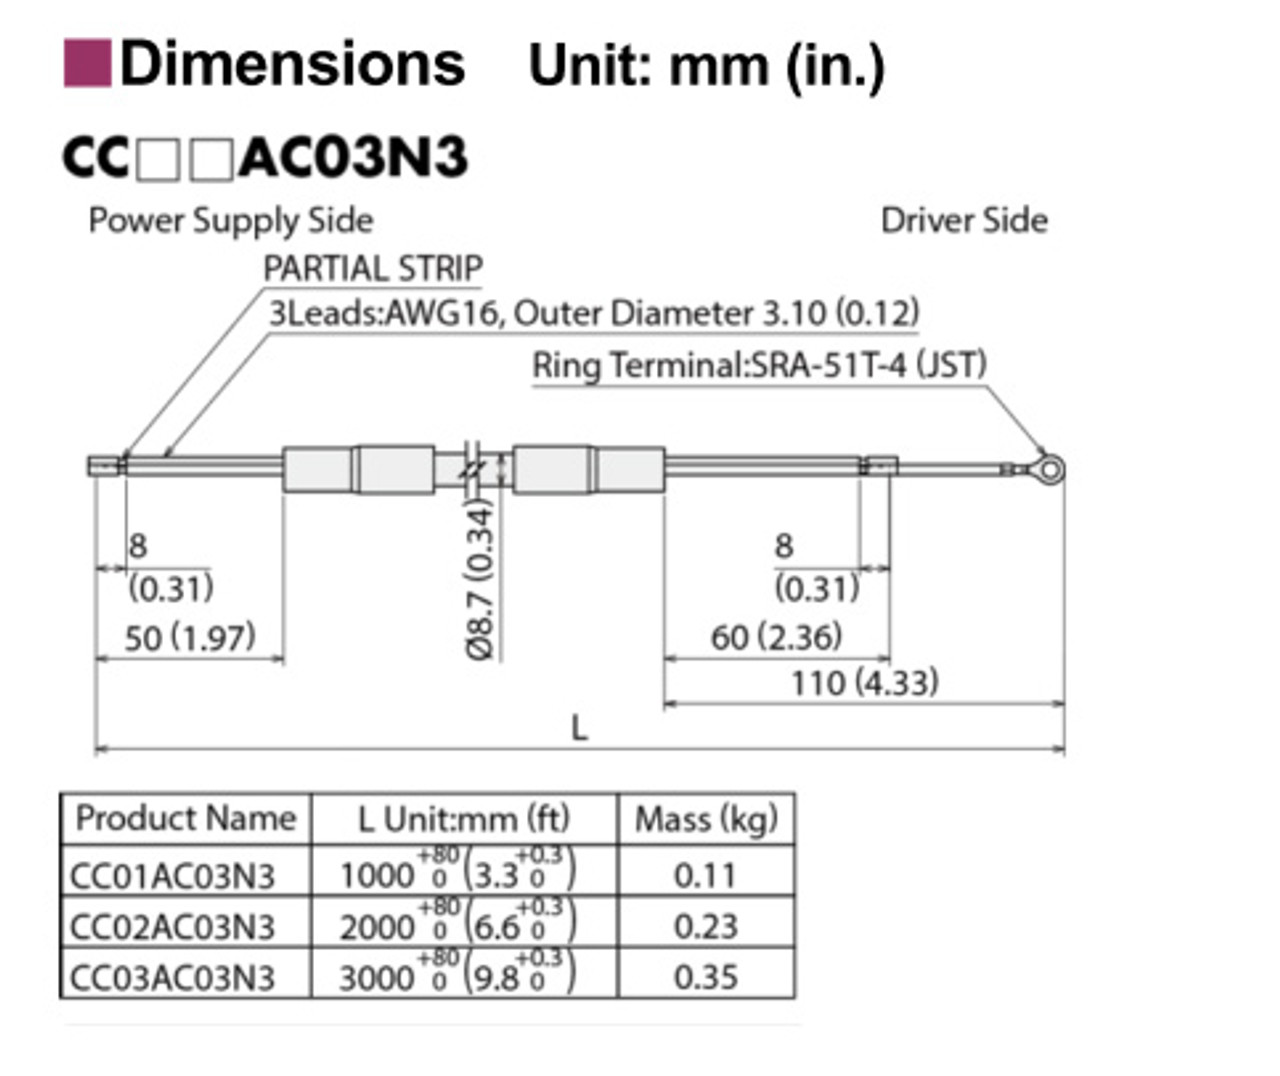 CC01AC03N3 - Dimensions